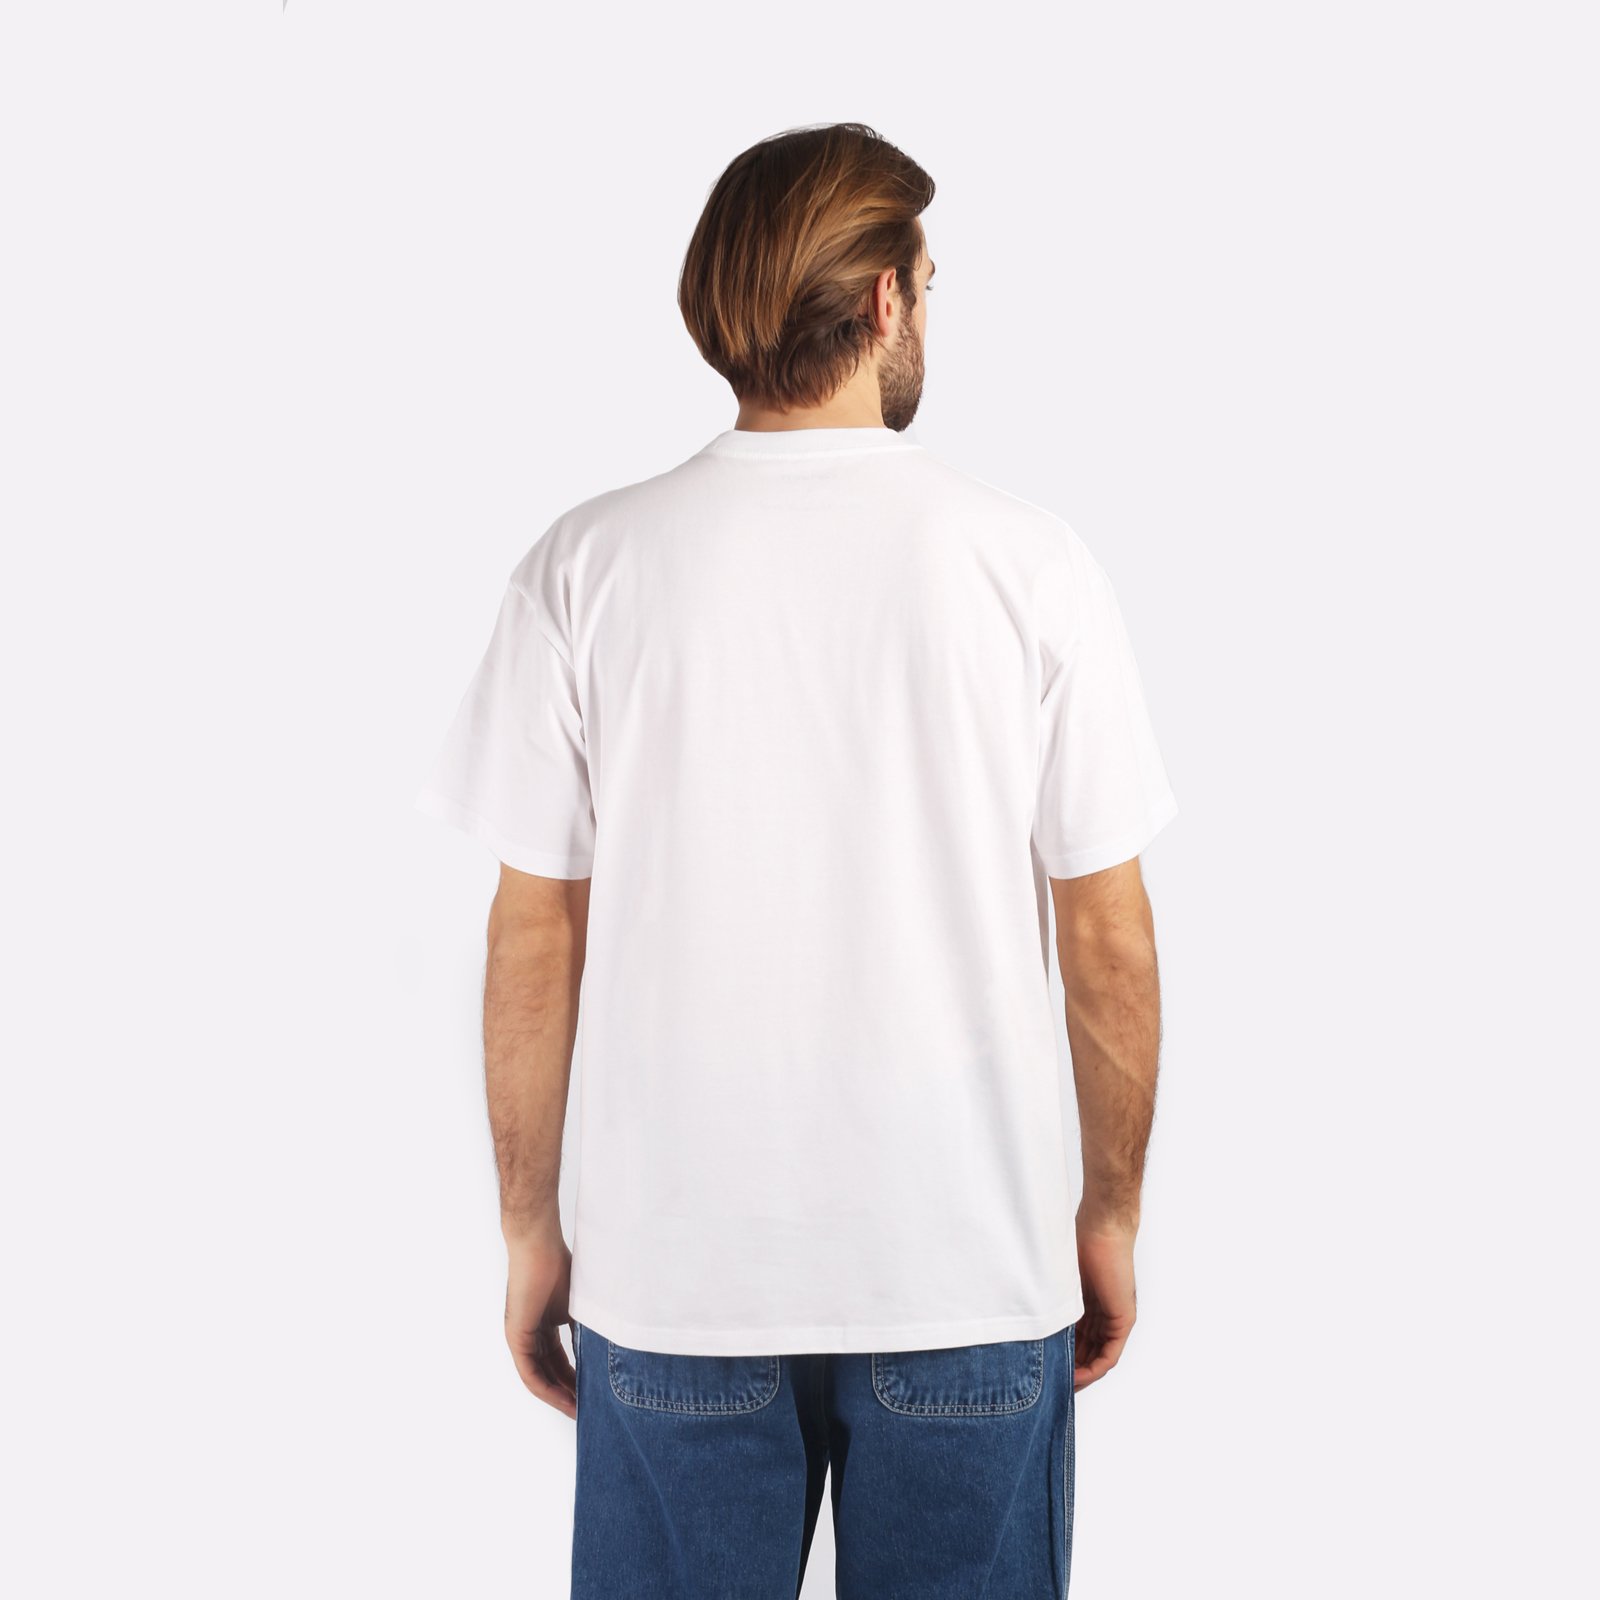 мужская белая футболка Carhartt WIP S/S Ollie Mac Icy Lake T-S I032408-white - цена, описание, фото 2